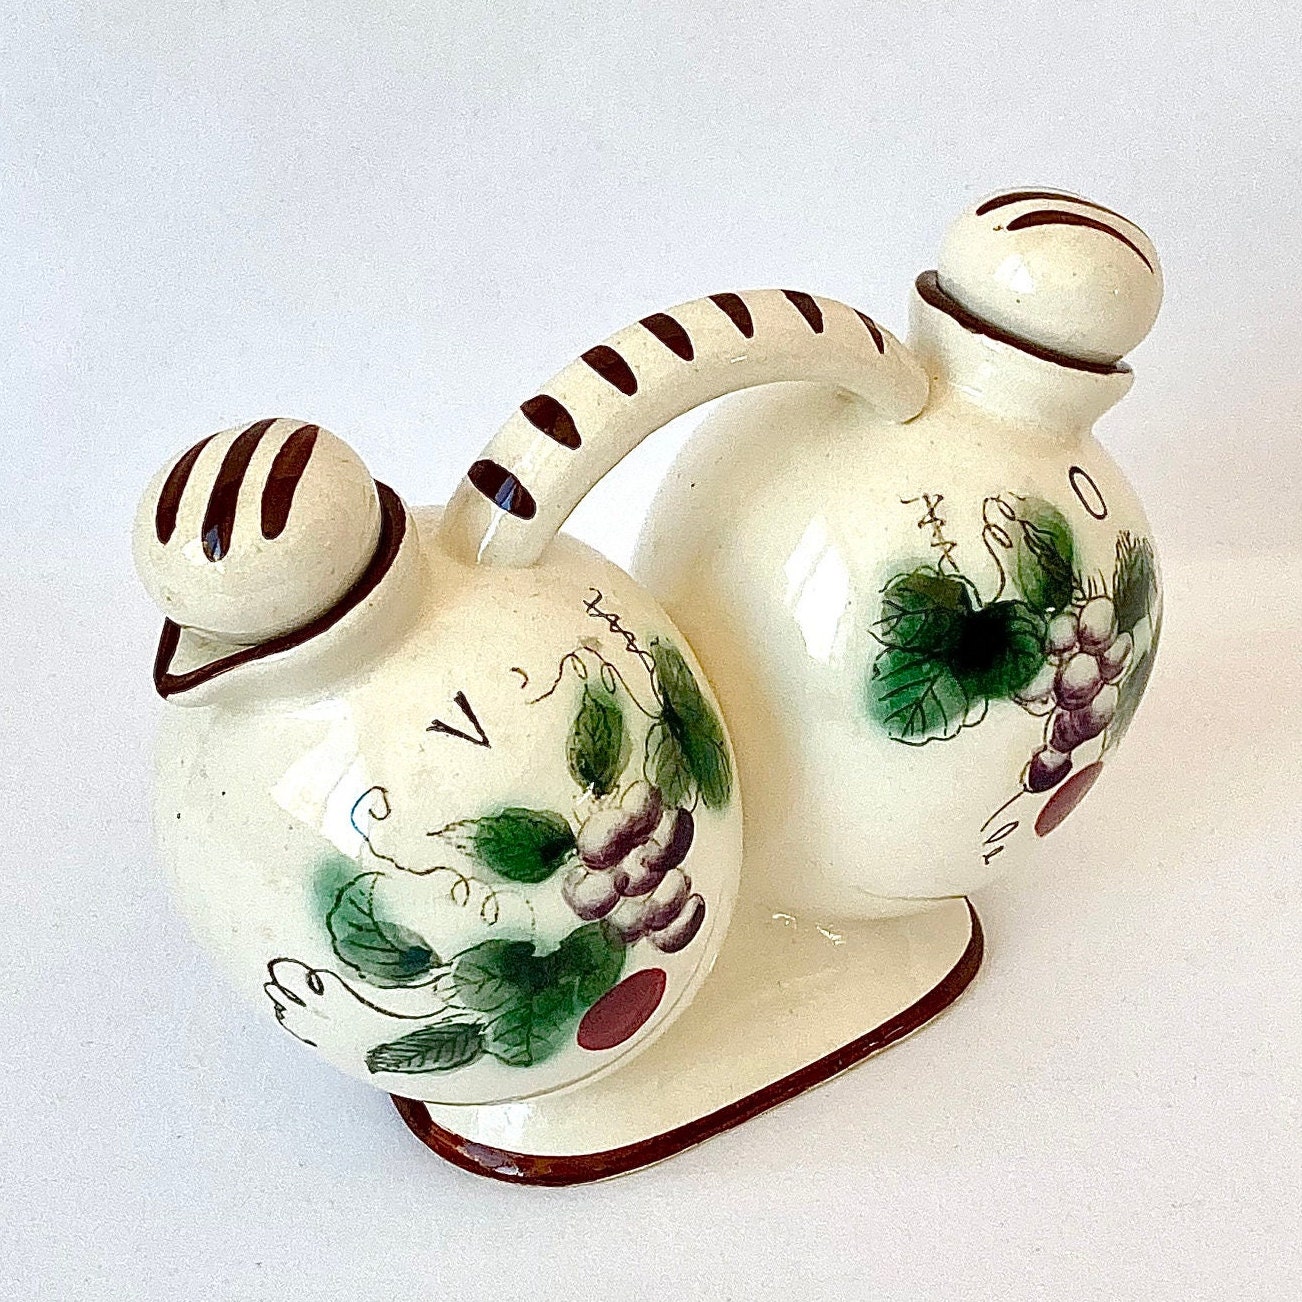 Juego de Aceitera-Vinagrera de Porcelana Vintage (Ref. 069)  Cerámica  artesanal, Manualidades de cerámica, Vajilla de cerámica